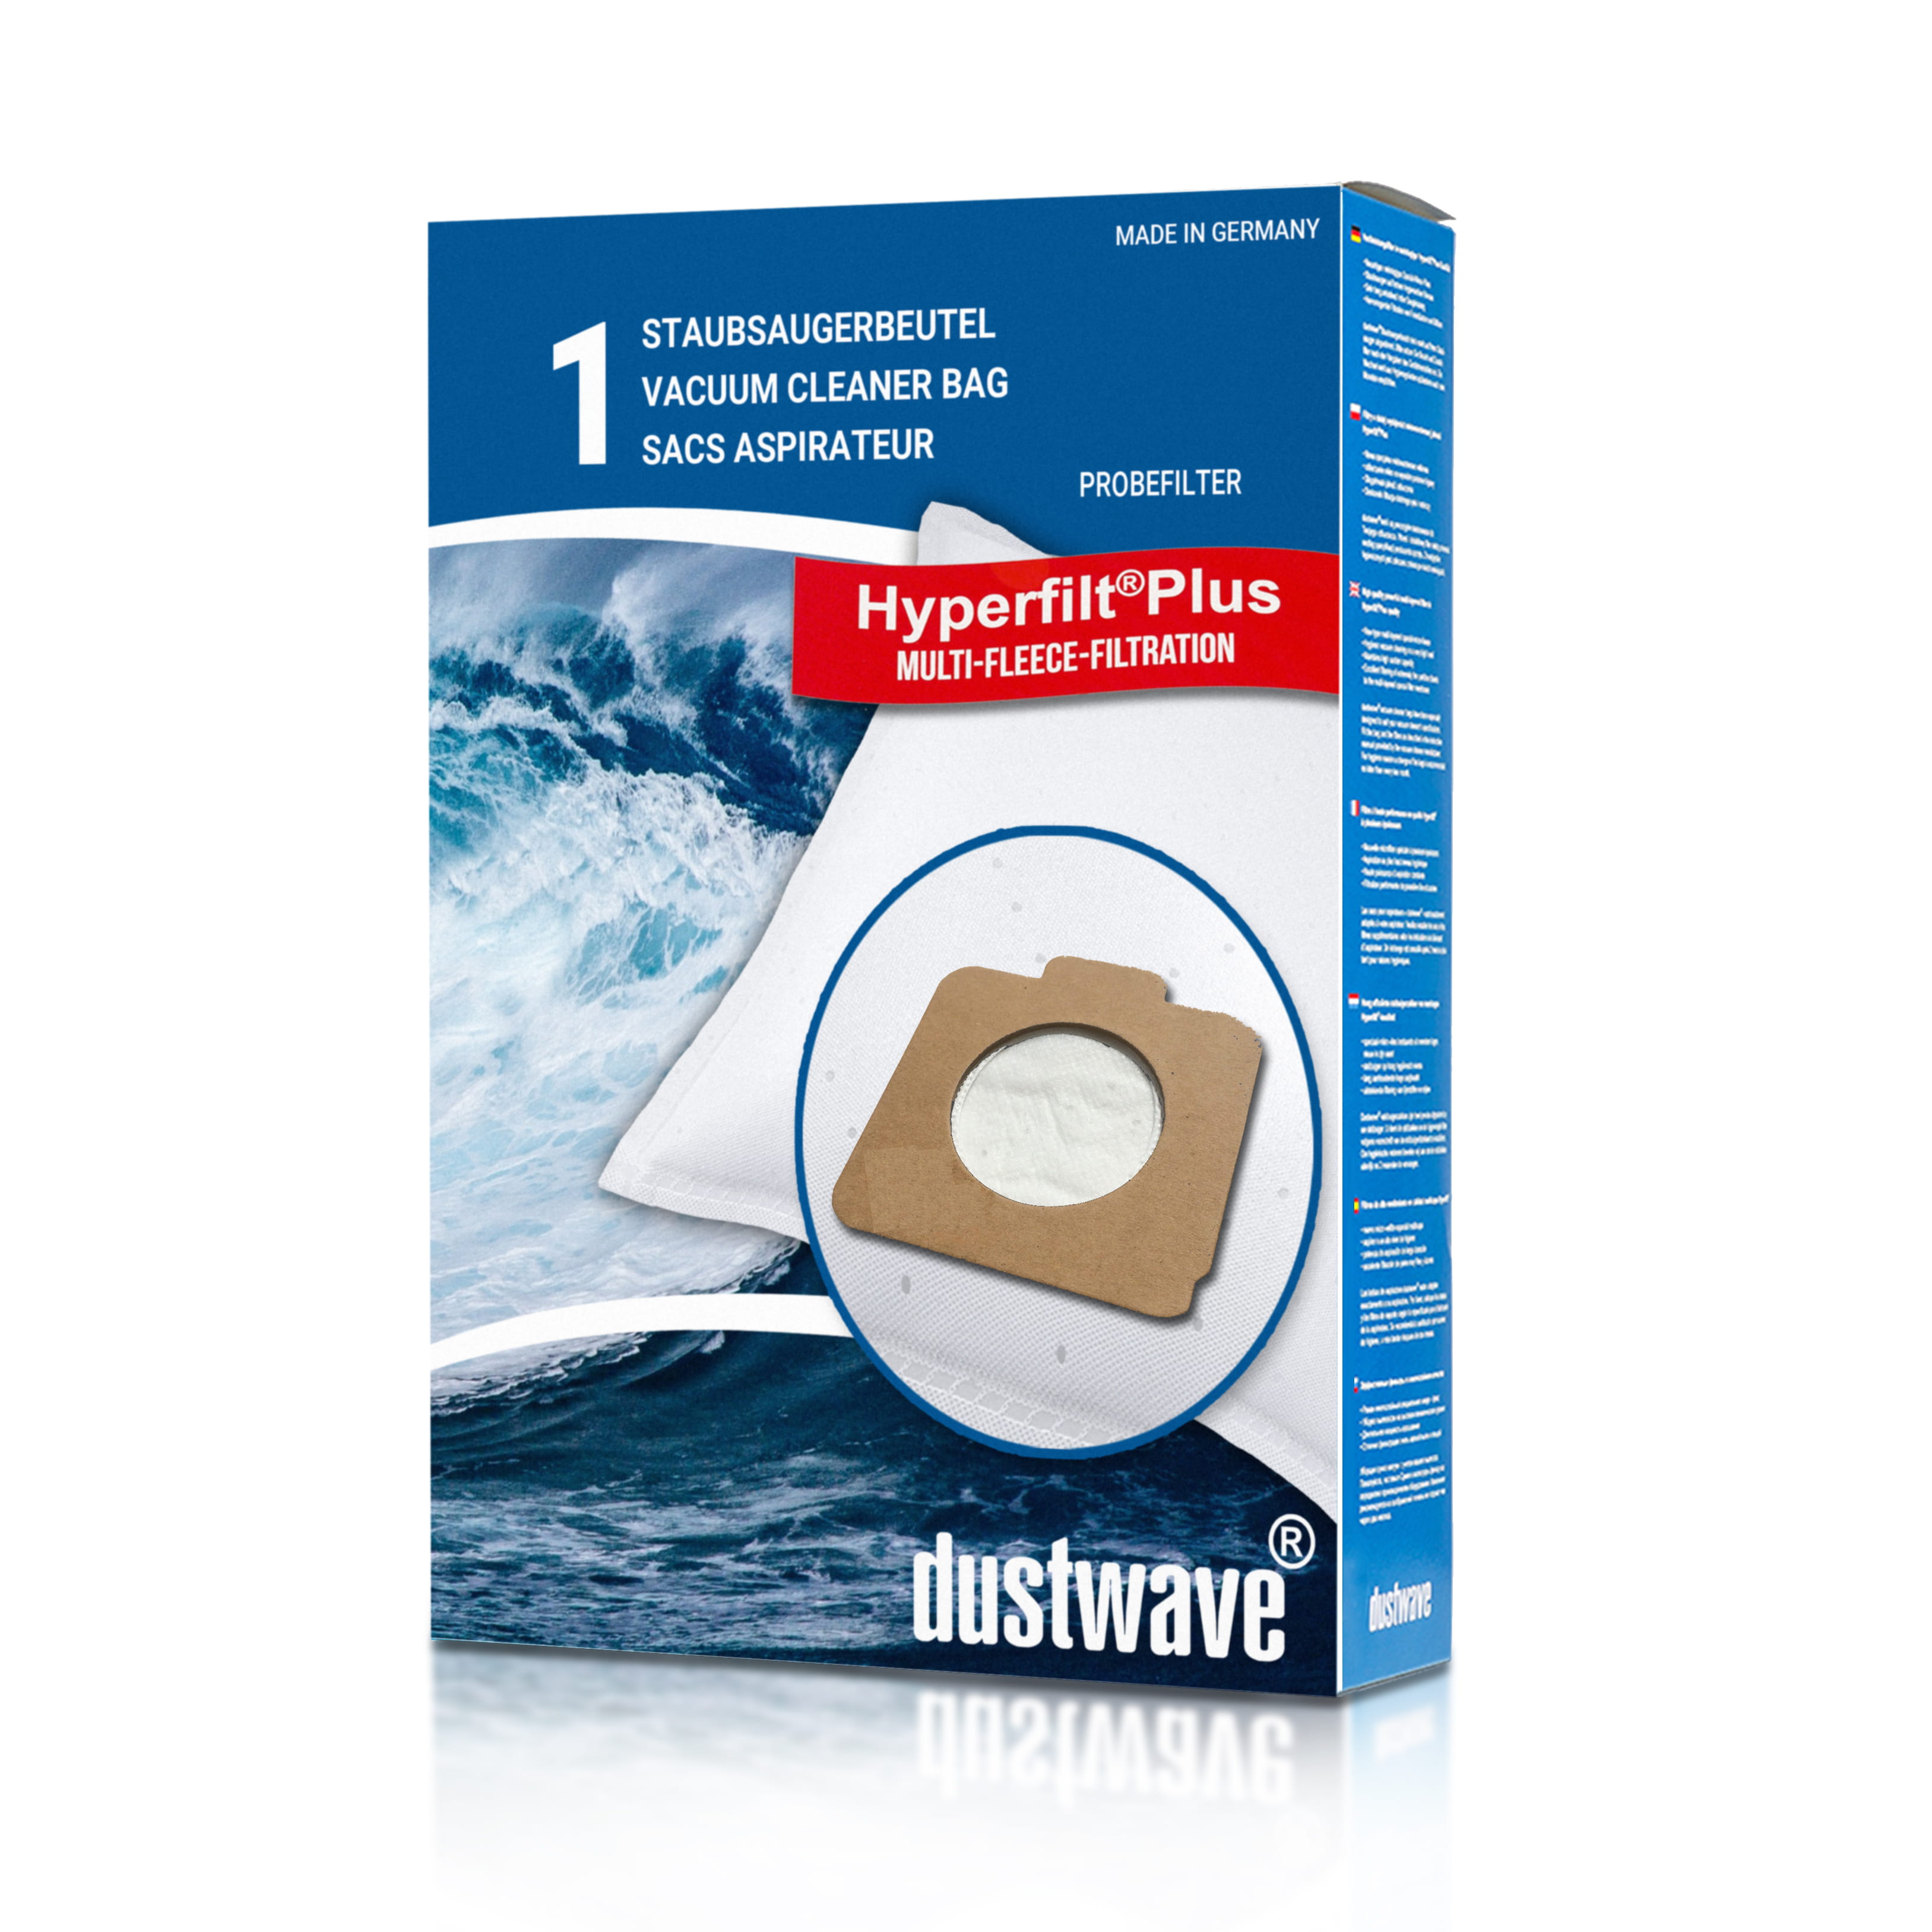 Dustwave® 1 Staubsaugerbeutel für Baur 340.805 / 340-805 - hocheffizient mit Hygieneverschluss - Made in Germany